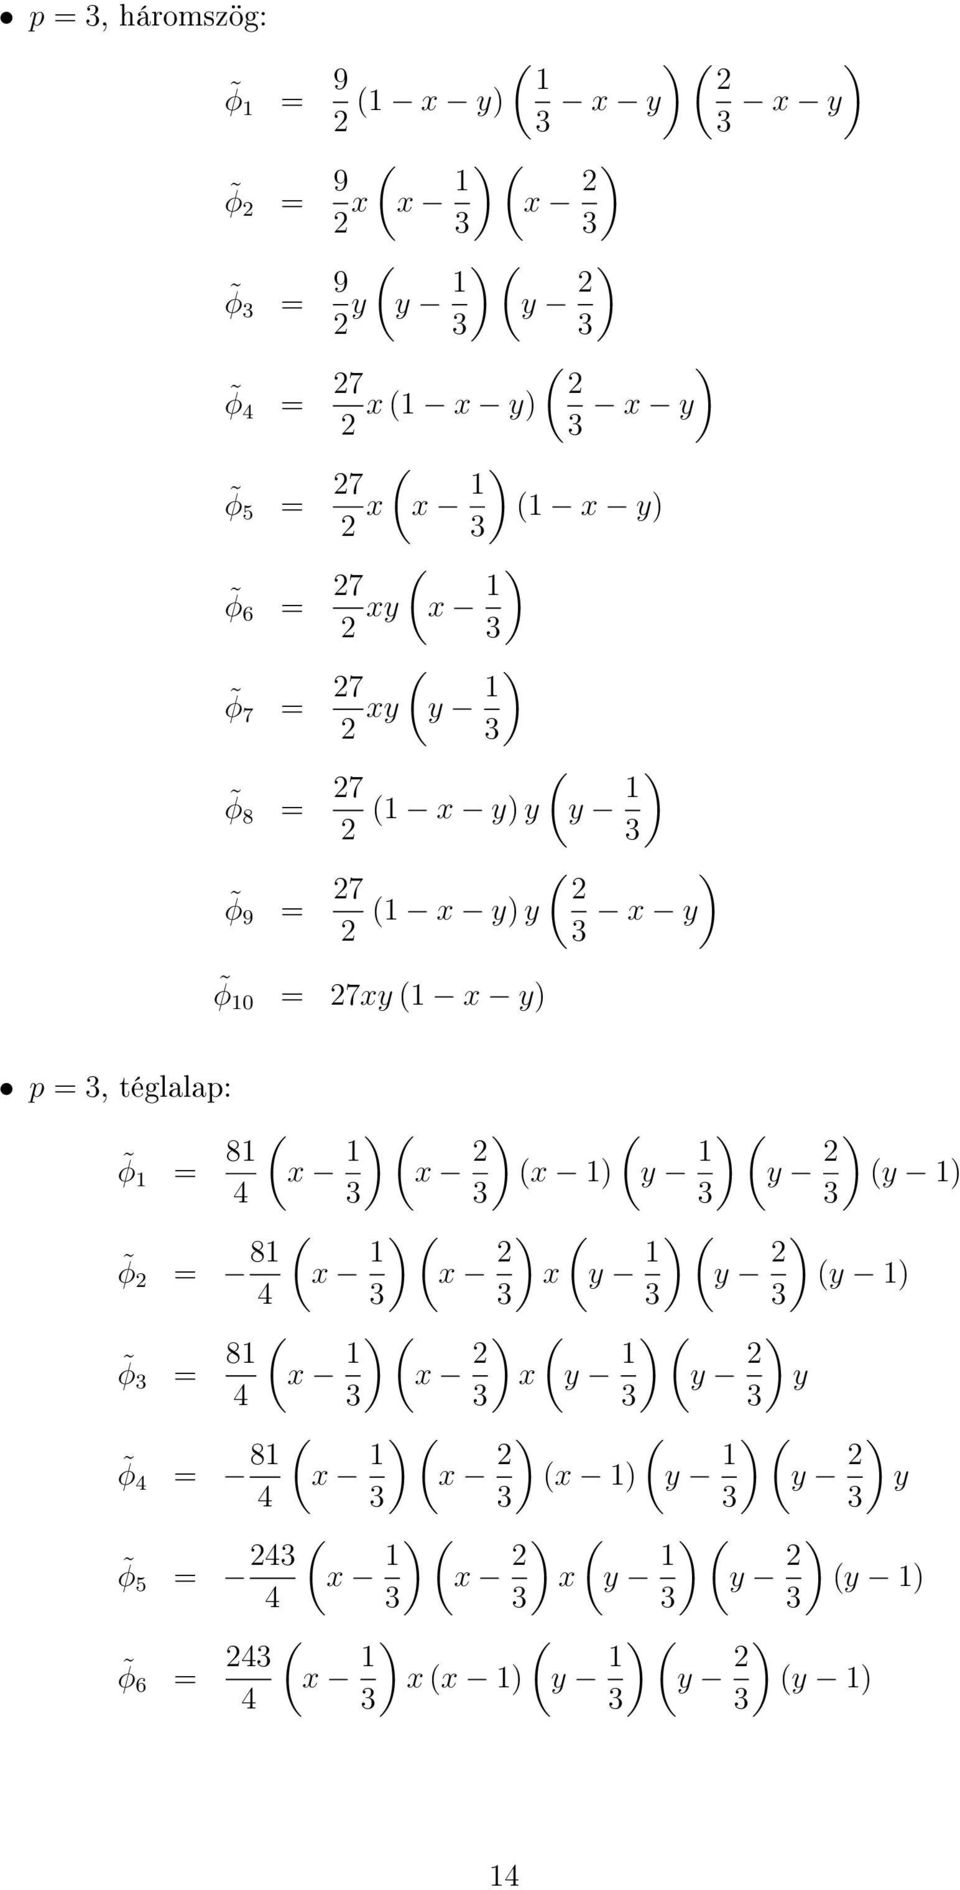 téglalap: φ 1 = 81 4 φ 2 = 81 4 φ 3 = 81 4 φ 4 = 81 4 φ 5 = 243 4 φ 6 = 243 4 x 1 ) x 2 ) x 1) y 1 ) y 2 ) y 1) 3 3 3 3 x 1 ) x 2 ) x y 1 ) y 2 ) y 1)